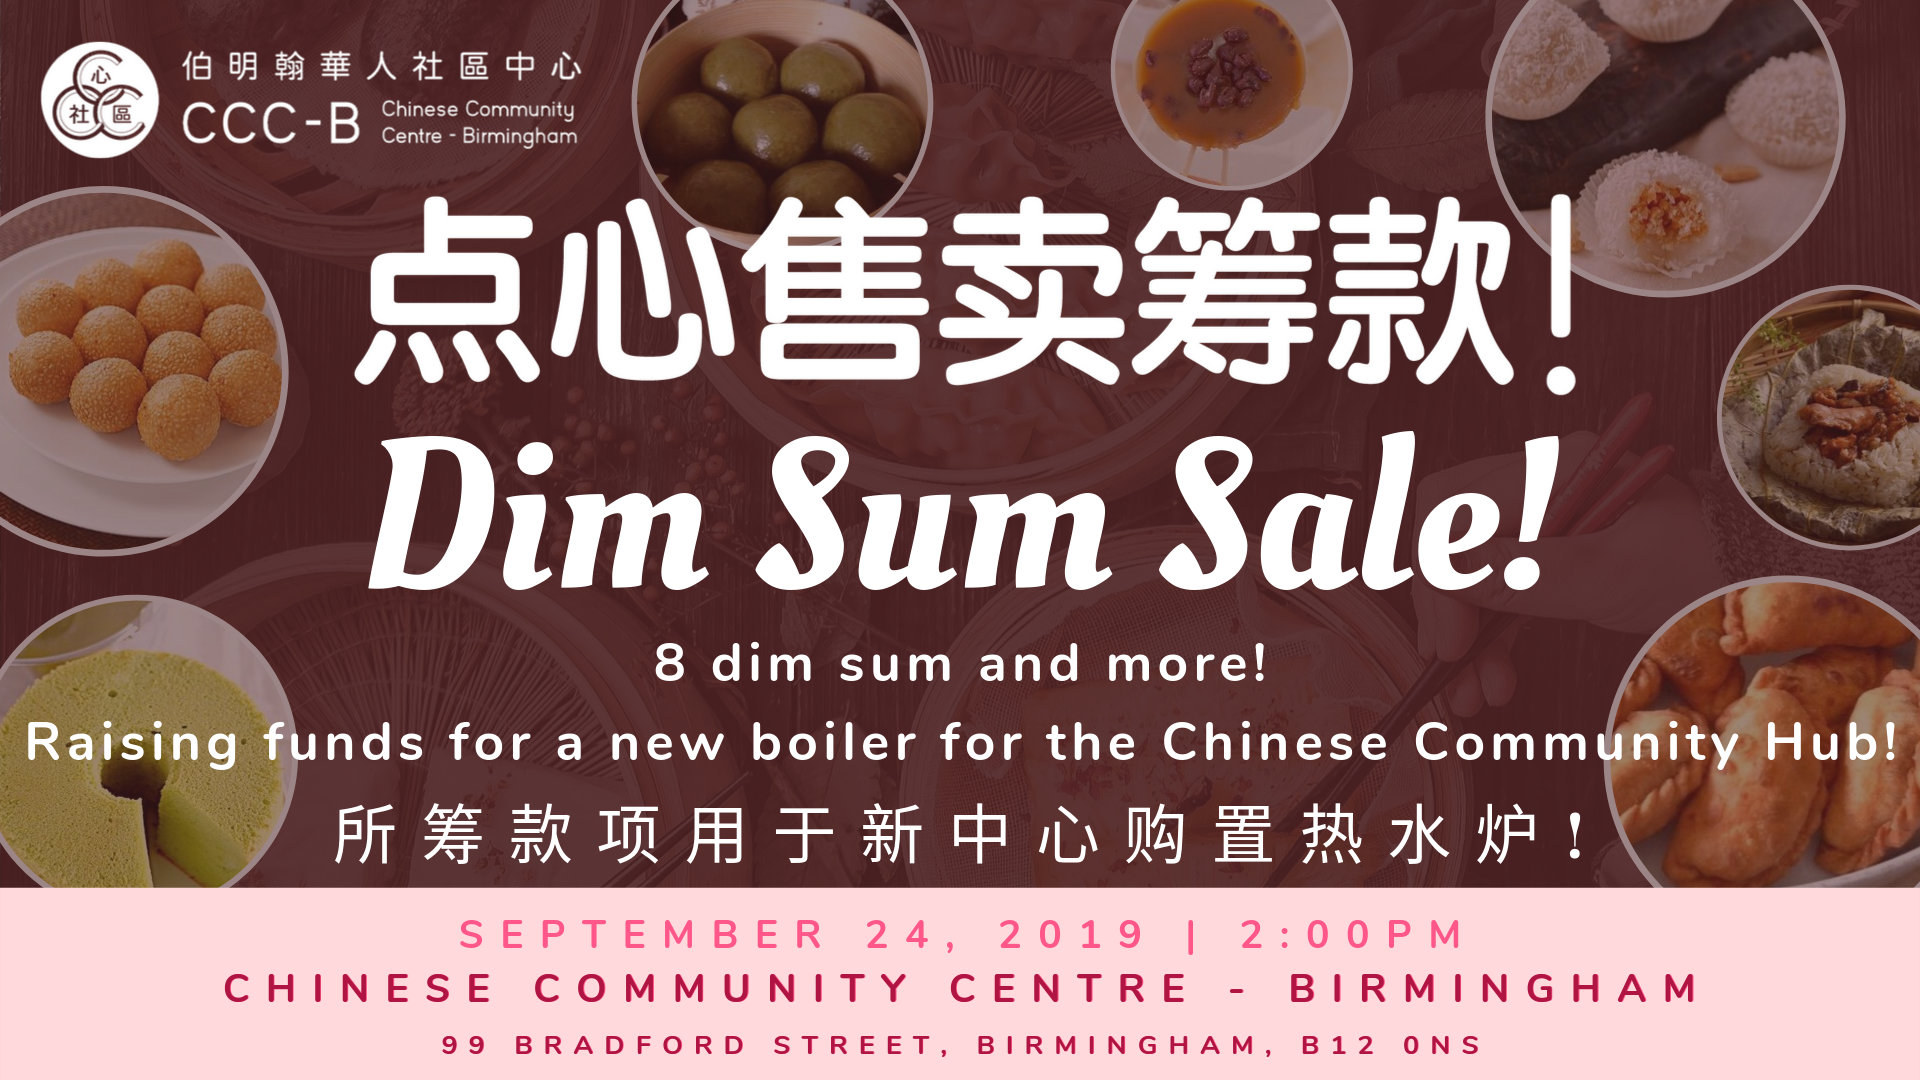 Dim Sum Sale / Fundraising Event 点心售卖 / 筹款活动